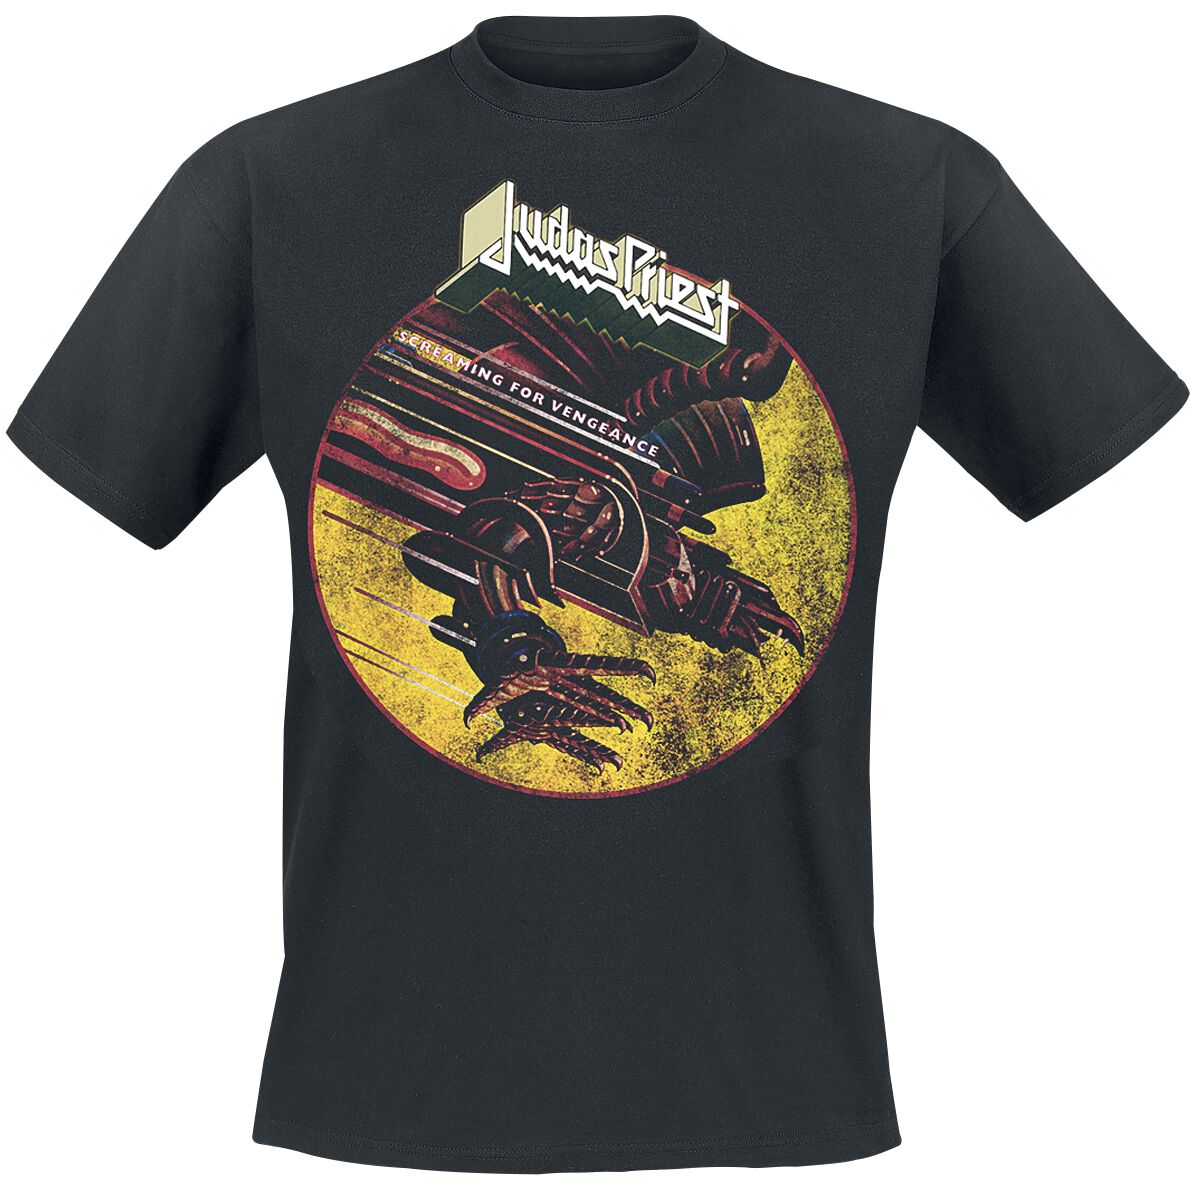 Judas Priest T-Shirt - SFV Distressed - M bis XXL - für Männer - Größe XXL - schwarz  - Lizenziertes Merchandise!